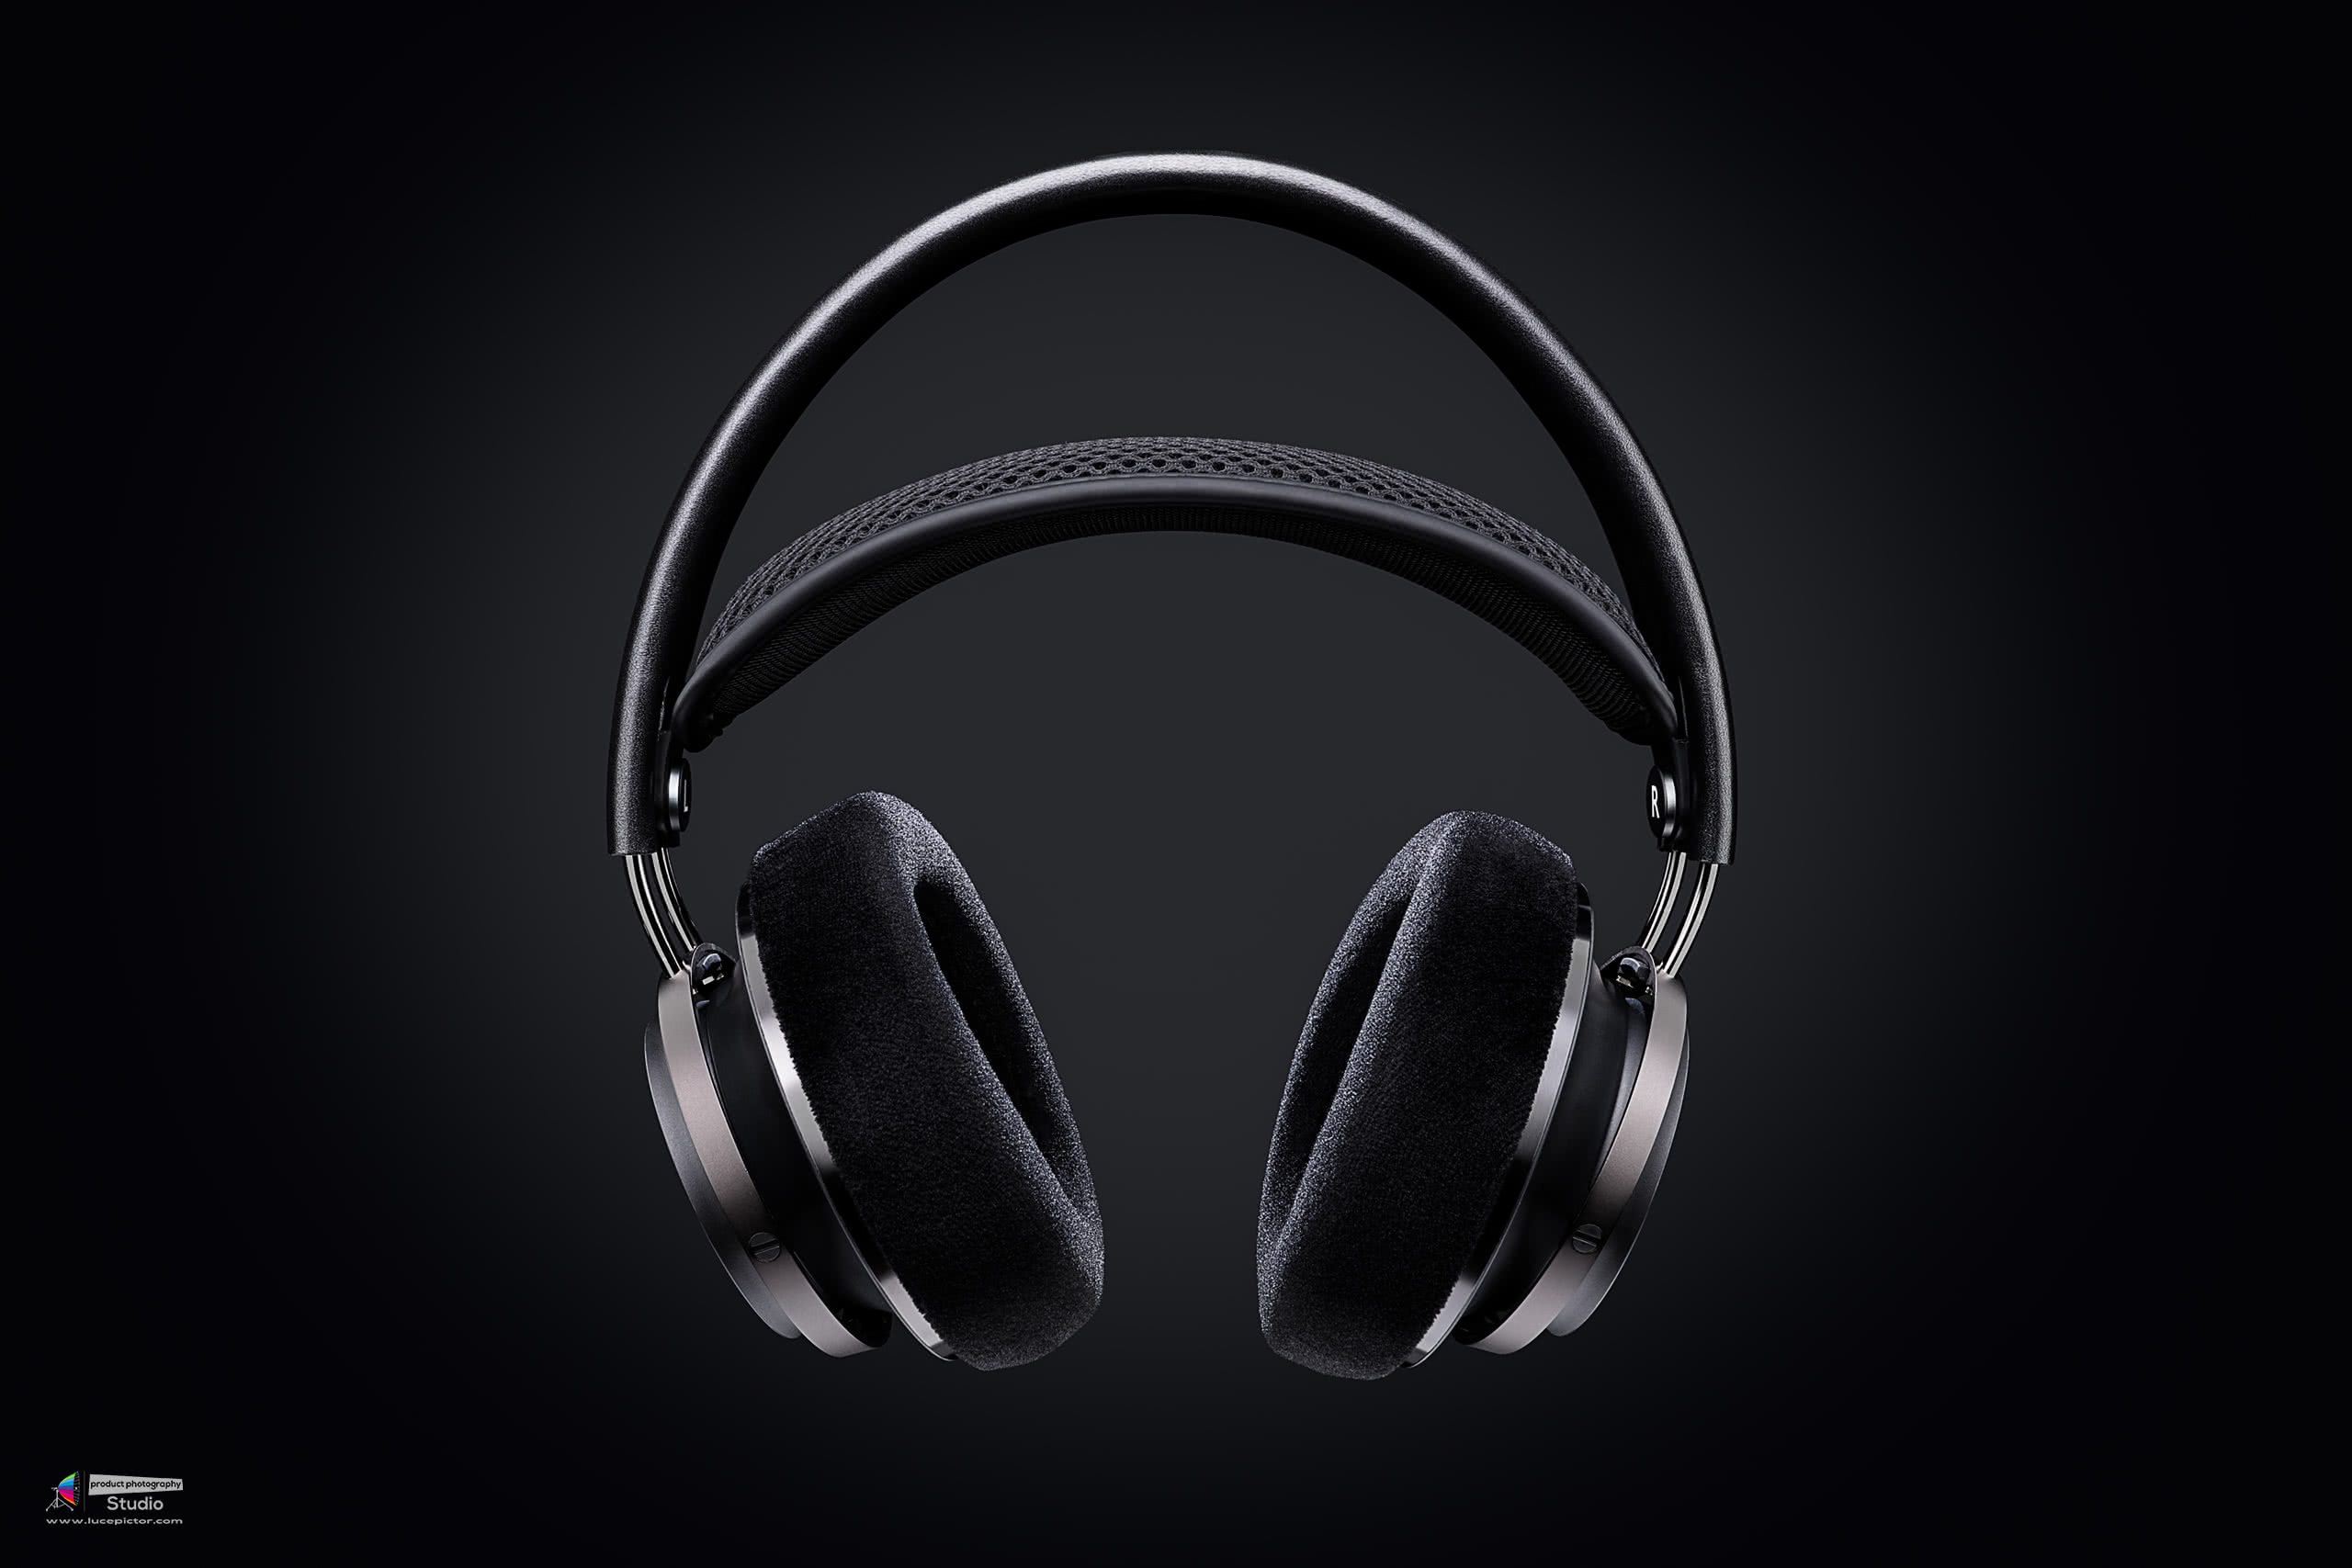 Philips Fidelio X2 headphones